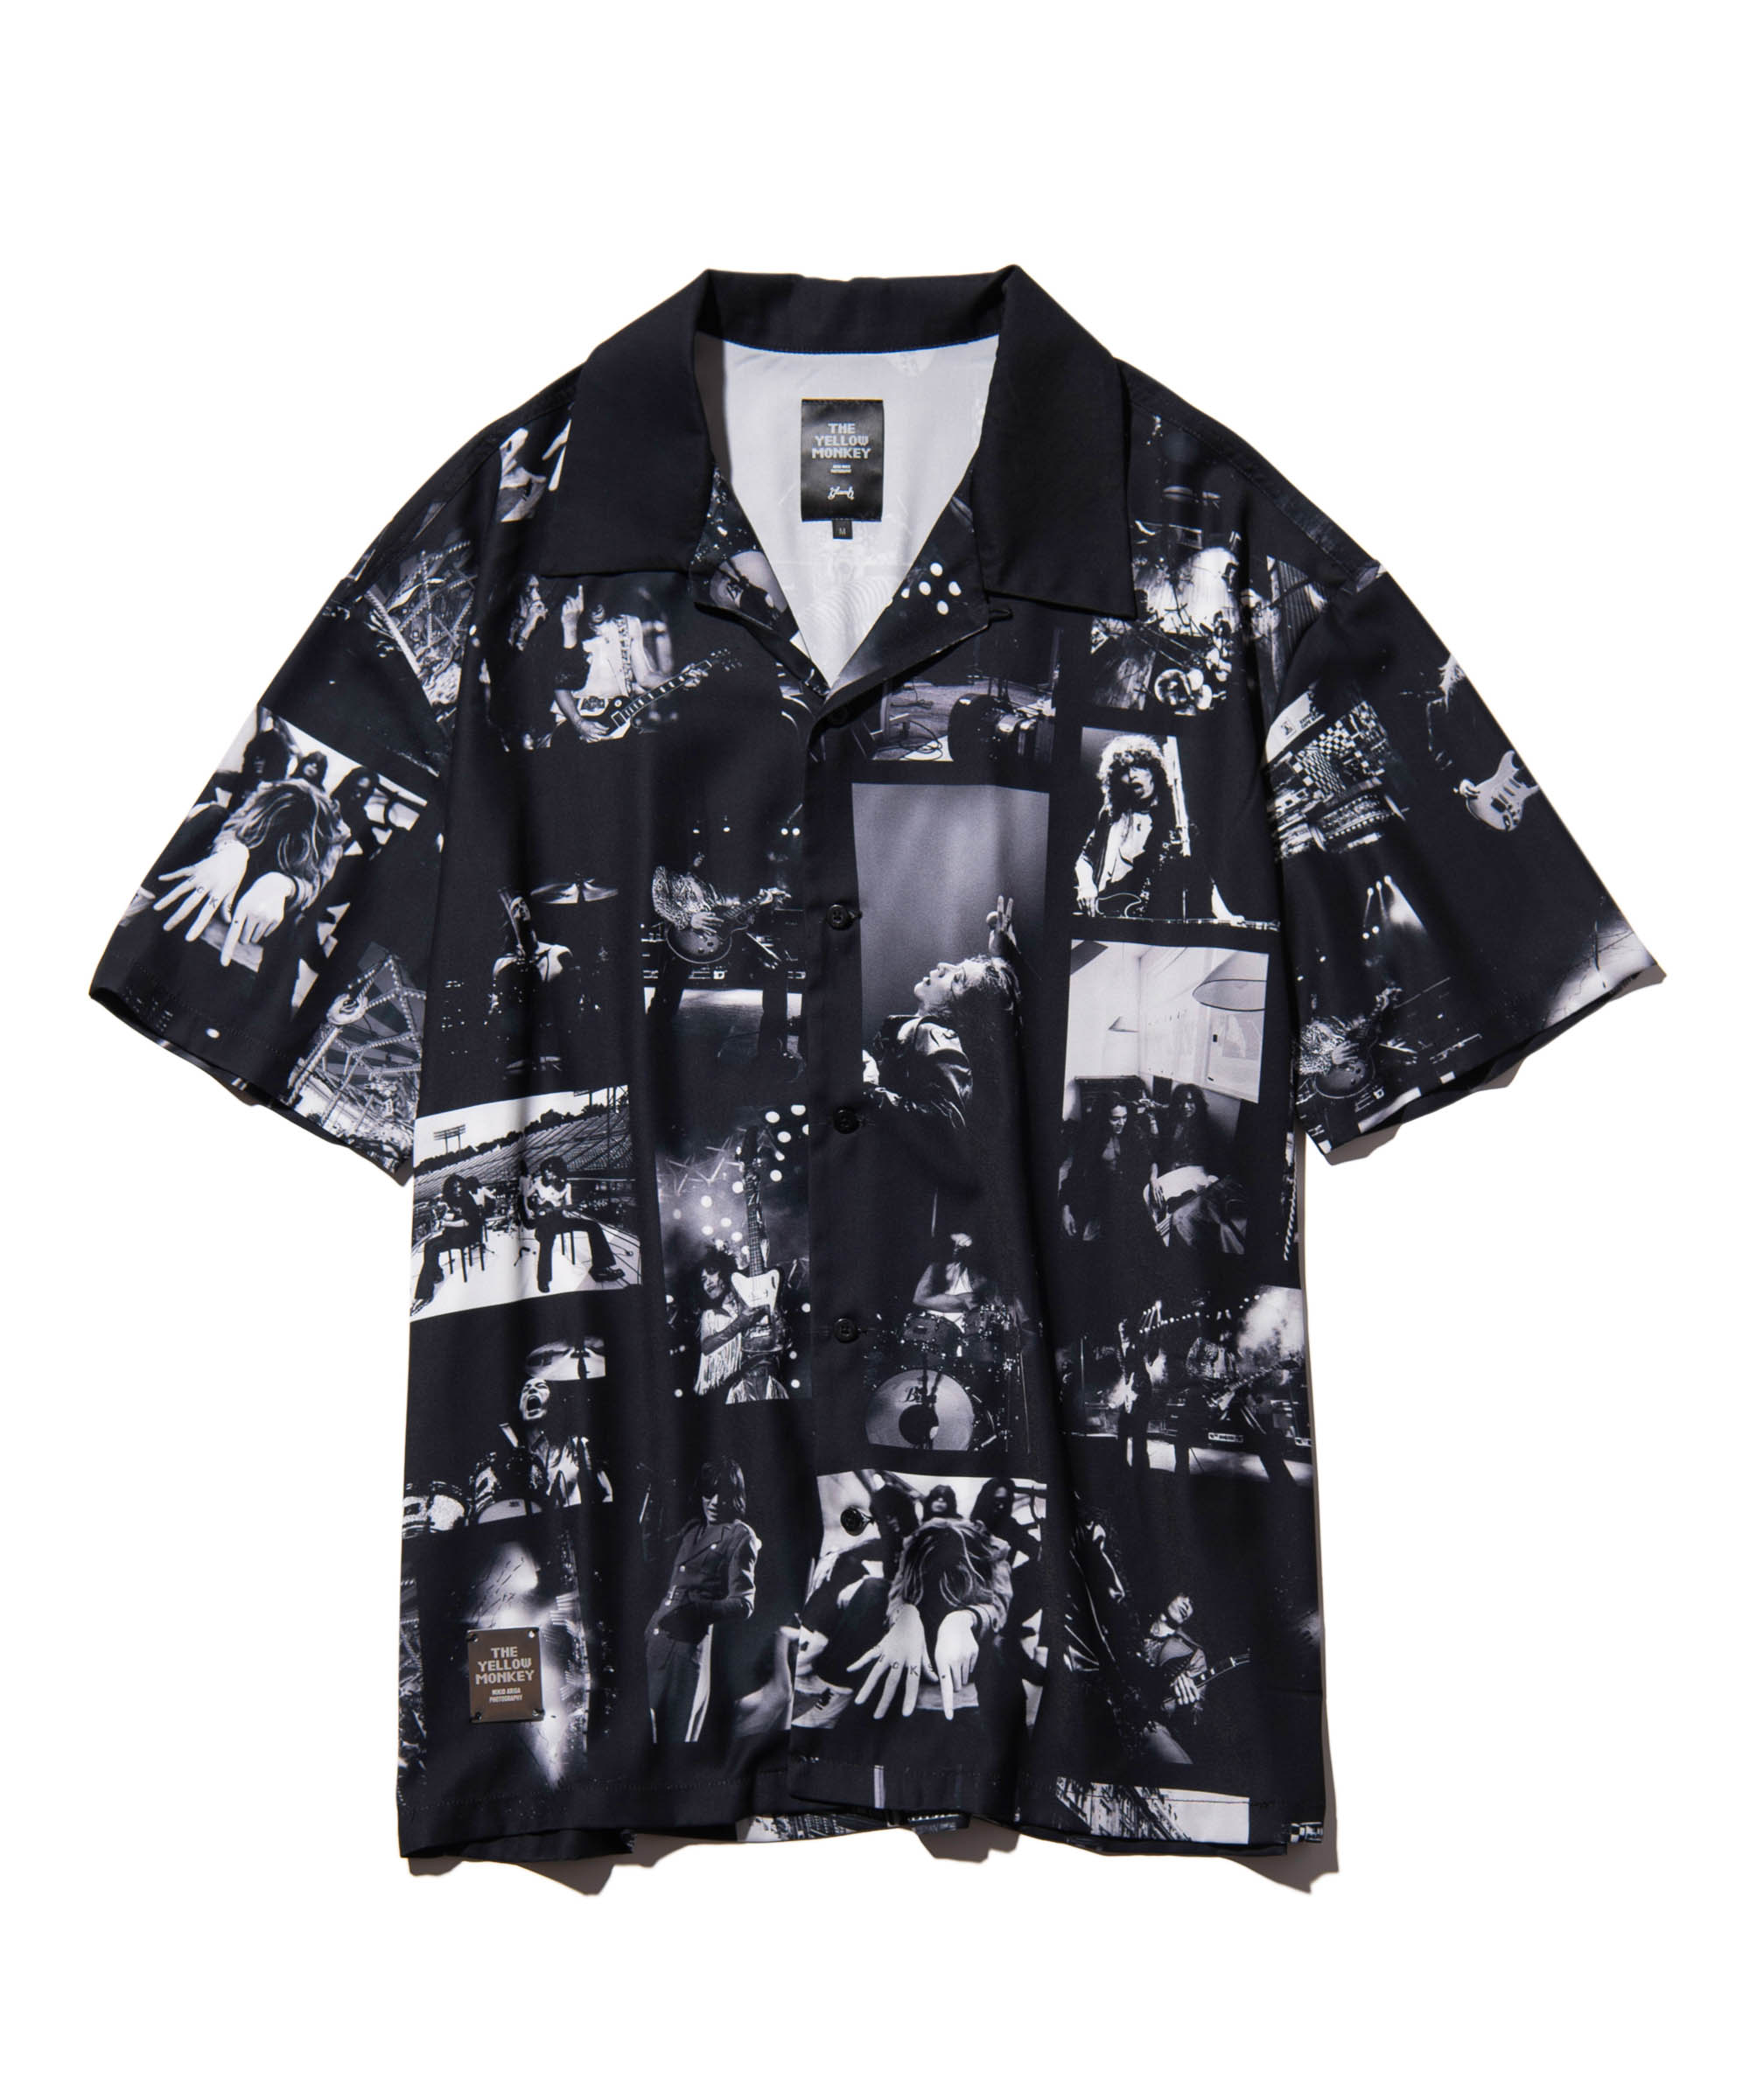 90年代のTHE YELLOW MONKEYの写真をTシャツに glambからコラボアイテム